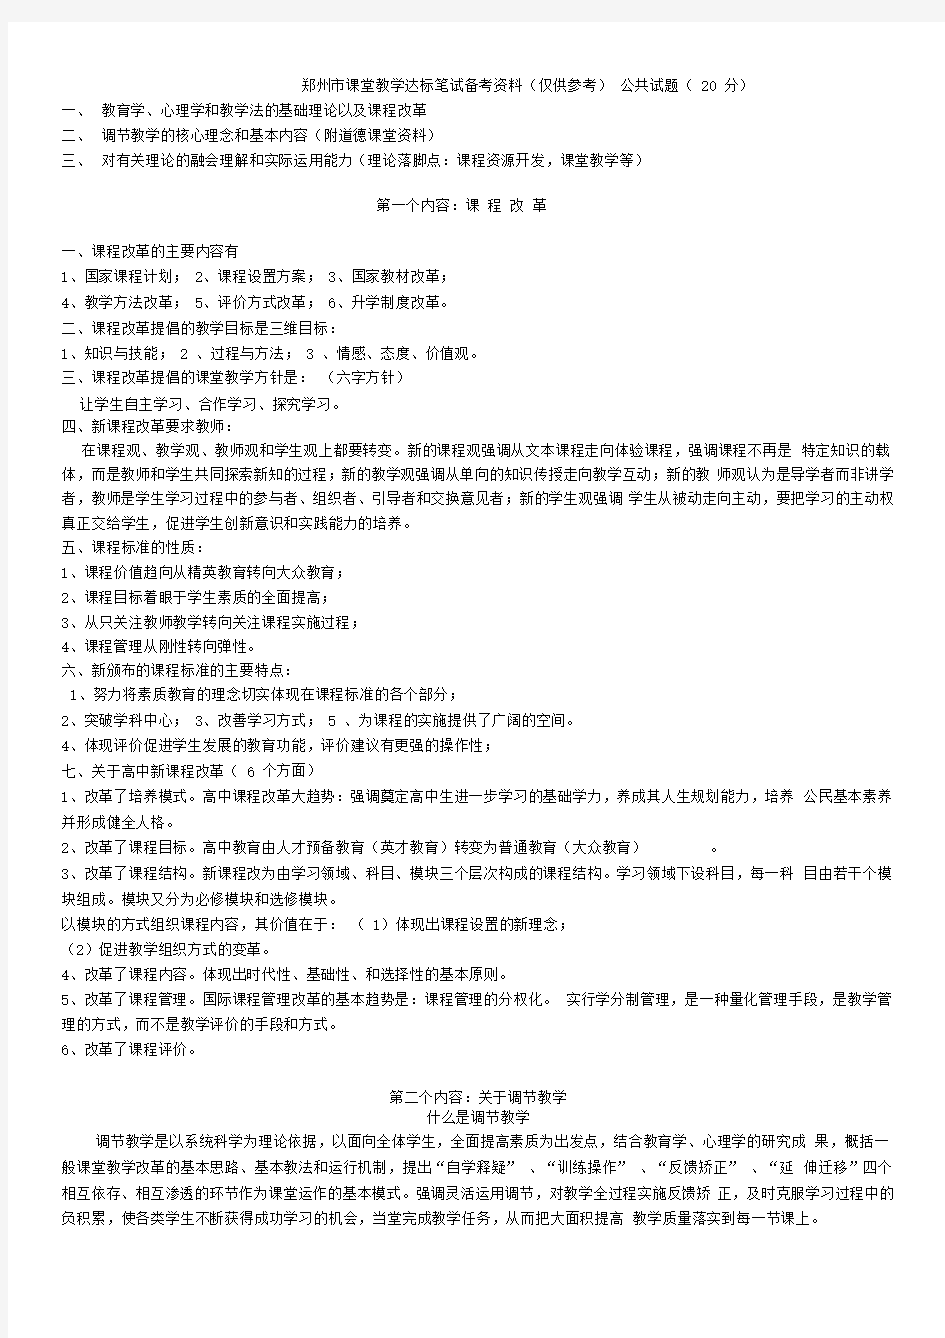 (供参考)郑州市课堂教学达标笔试备考资料